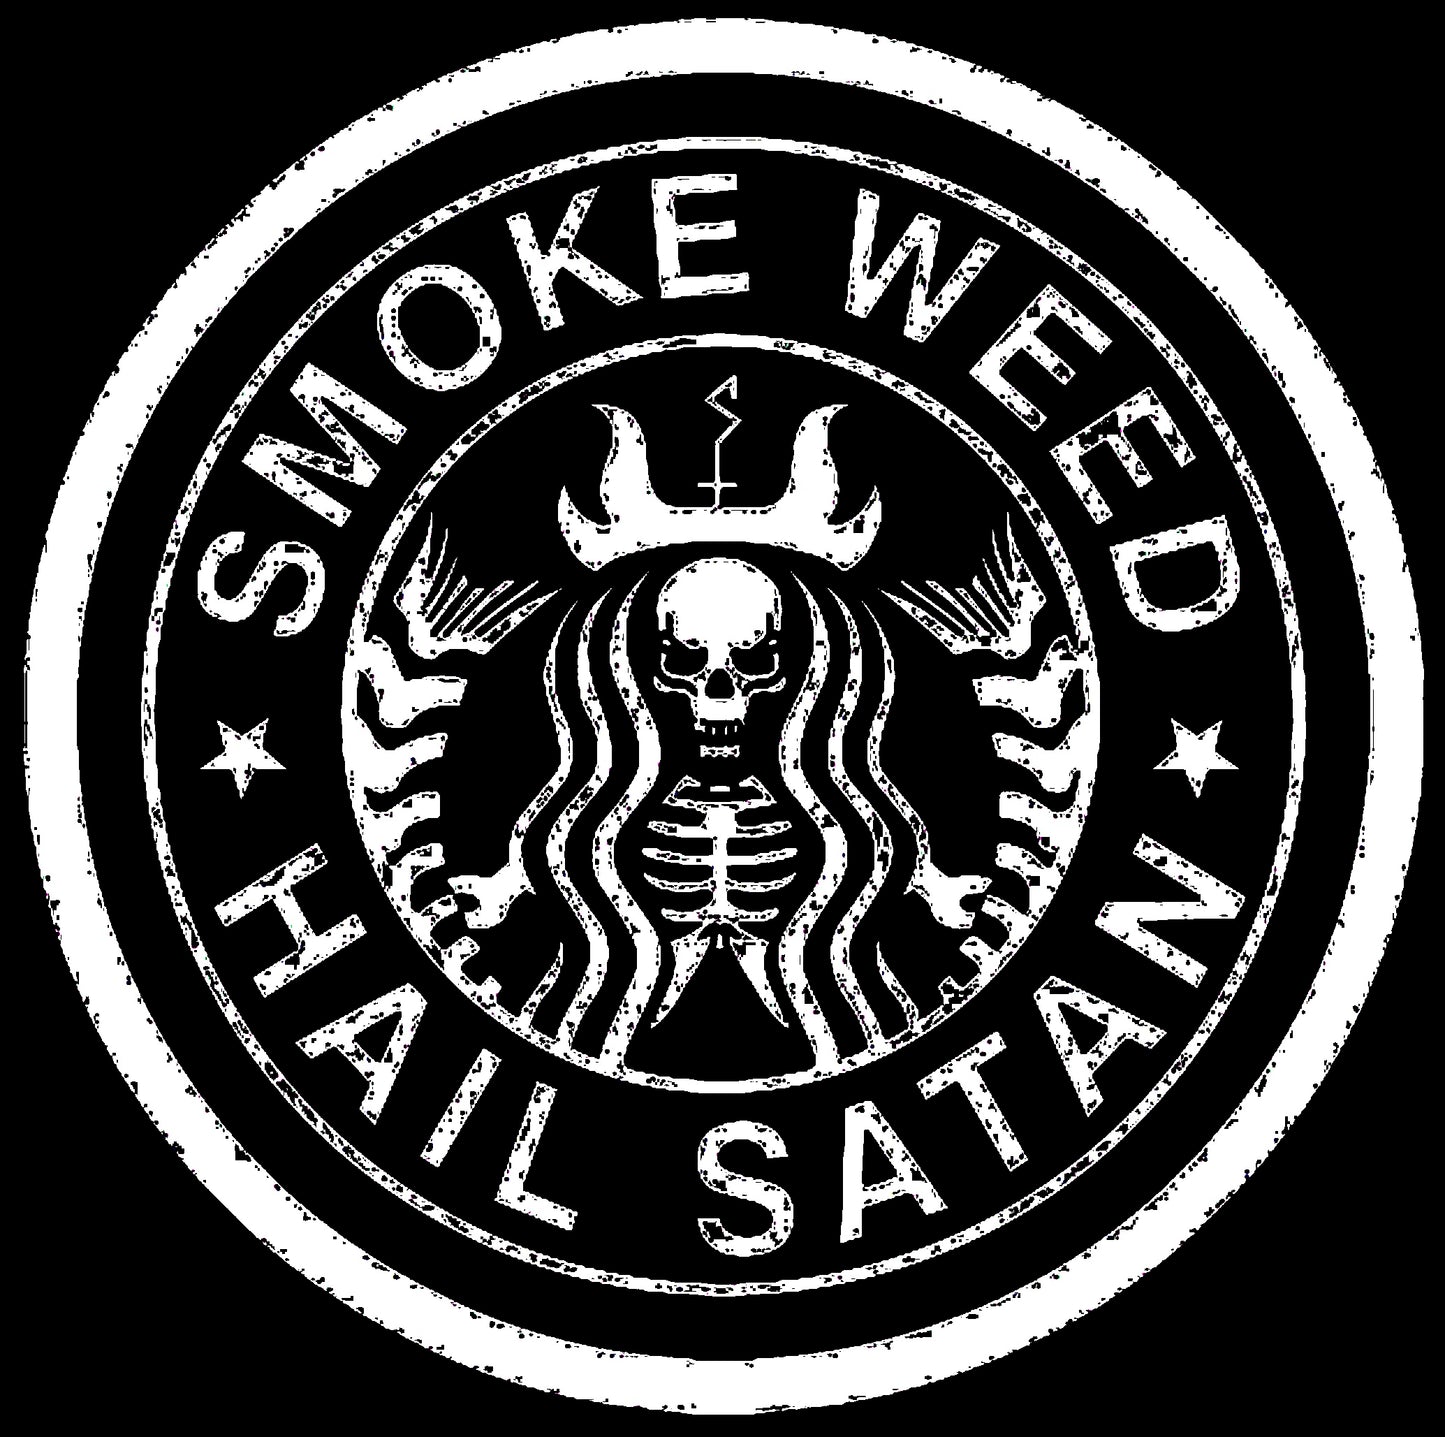 Camiseta / T-Shirt "Smoke Weed & Hail Satan"